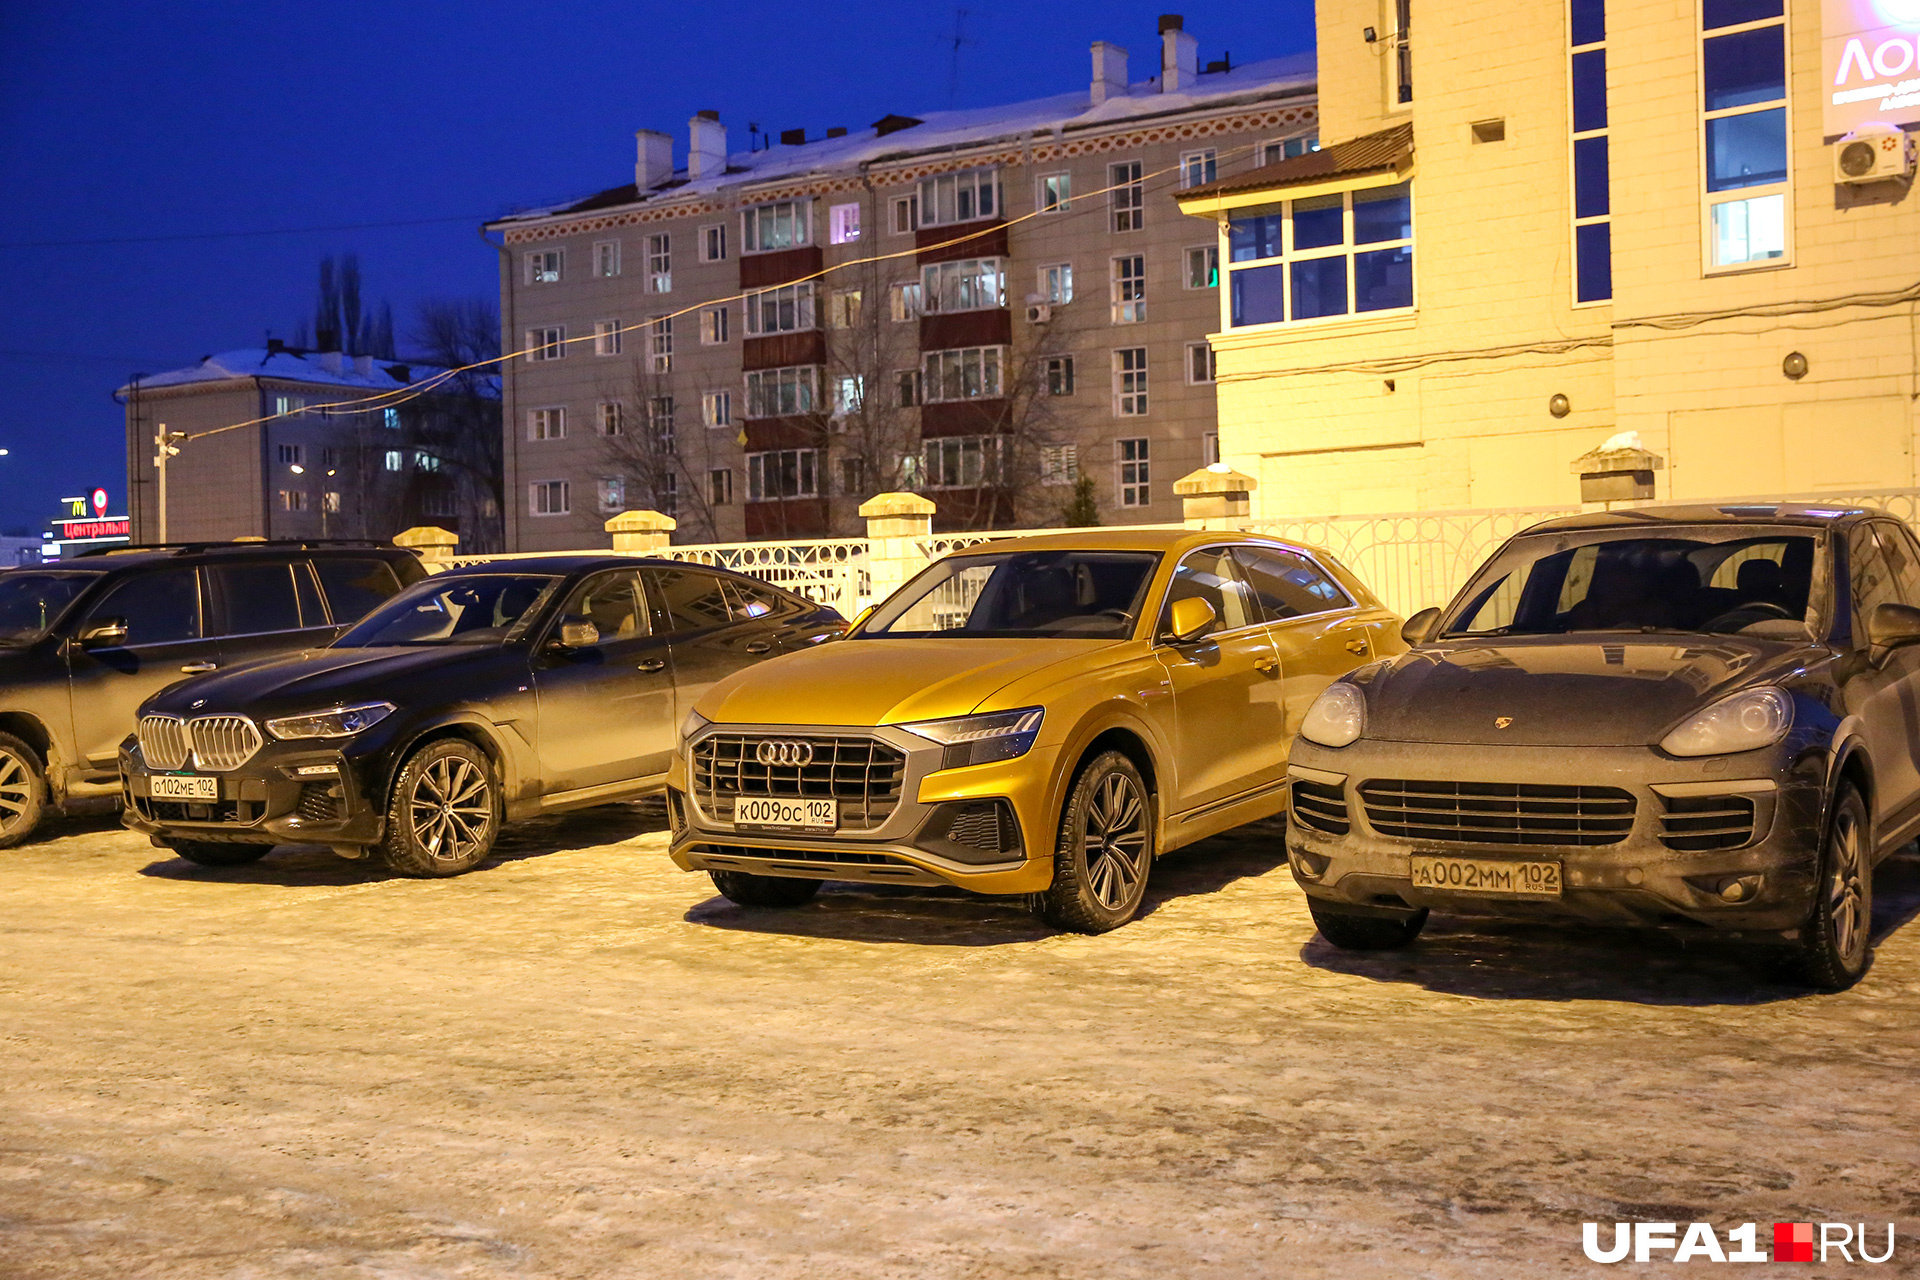 А здесь припарковался водитель на желтом Audi. Рядом не менее дешевые соседи — Porsche и BMW